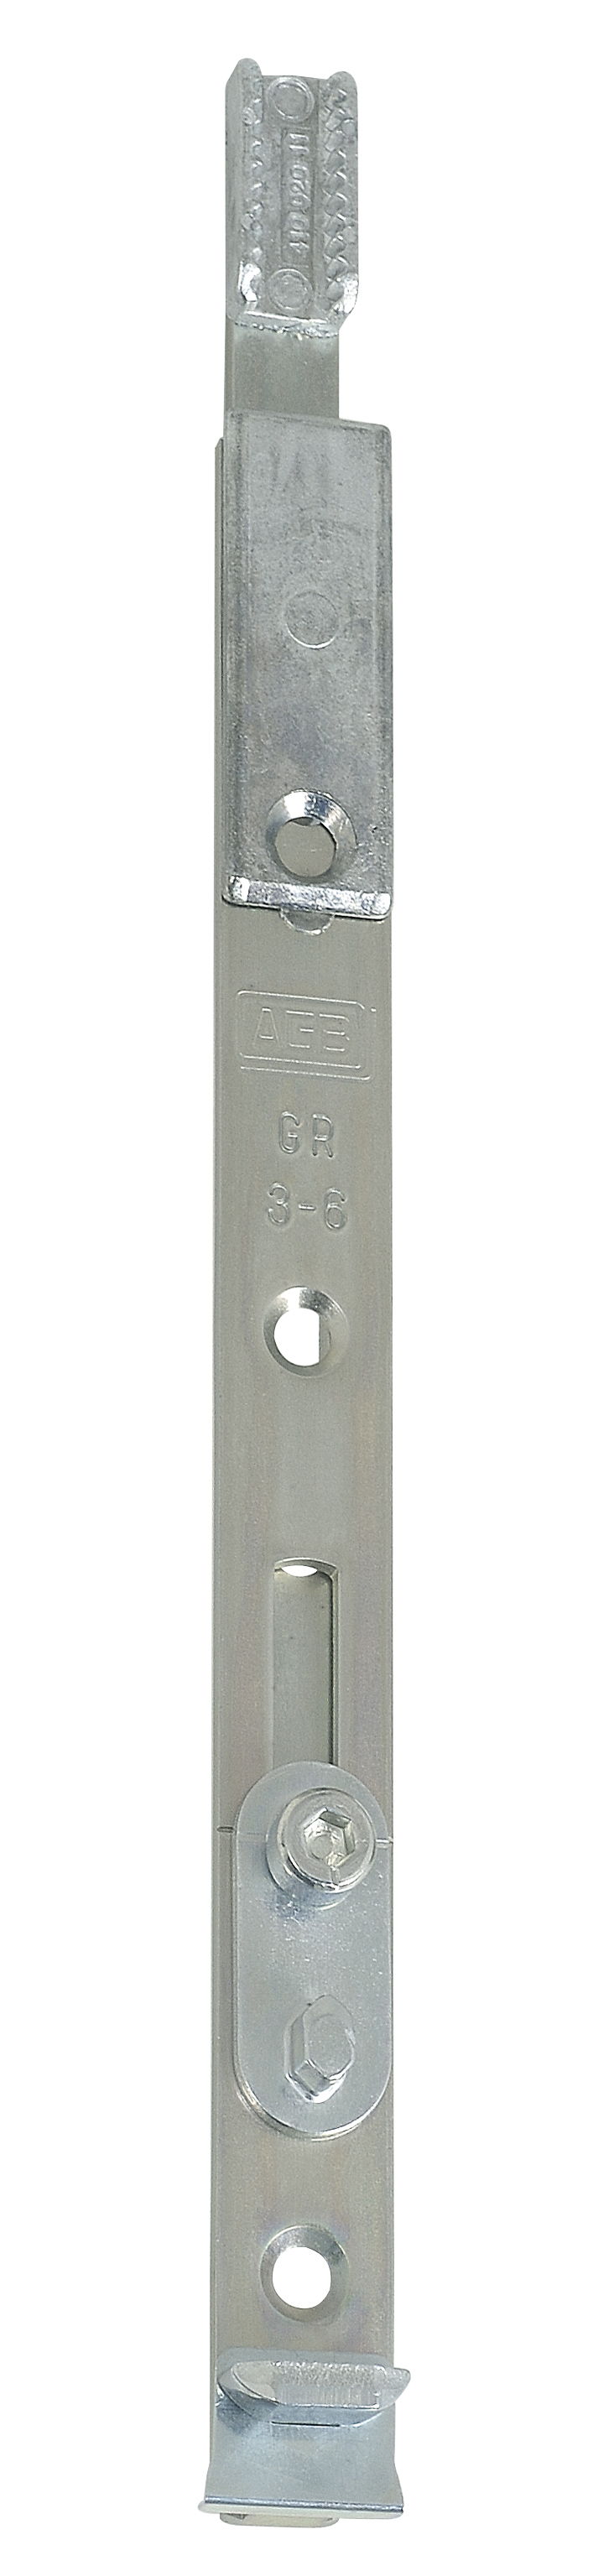 AGB -  Terminale UNITOP MOD 458 superiore e inferiore per serratura multipunto - hbb 180